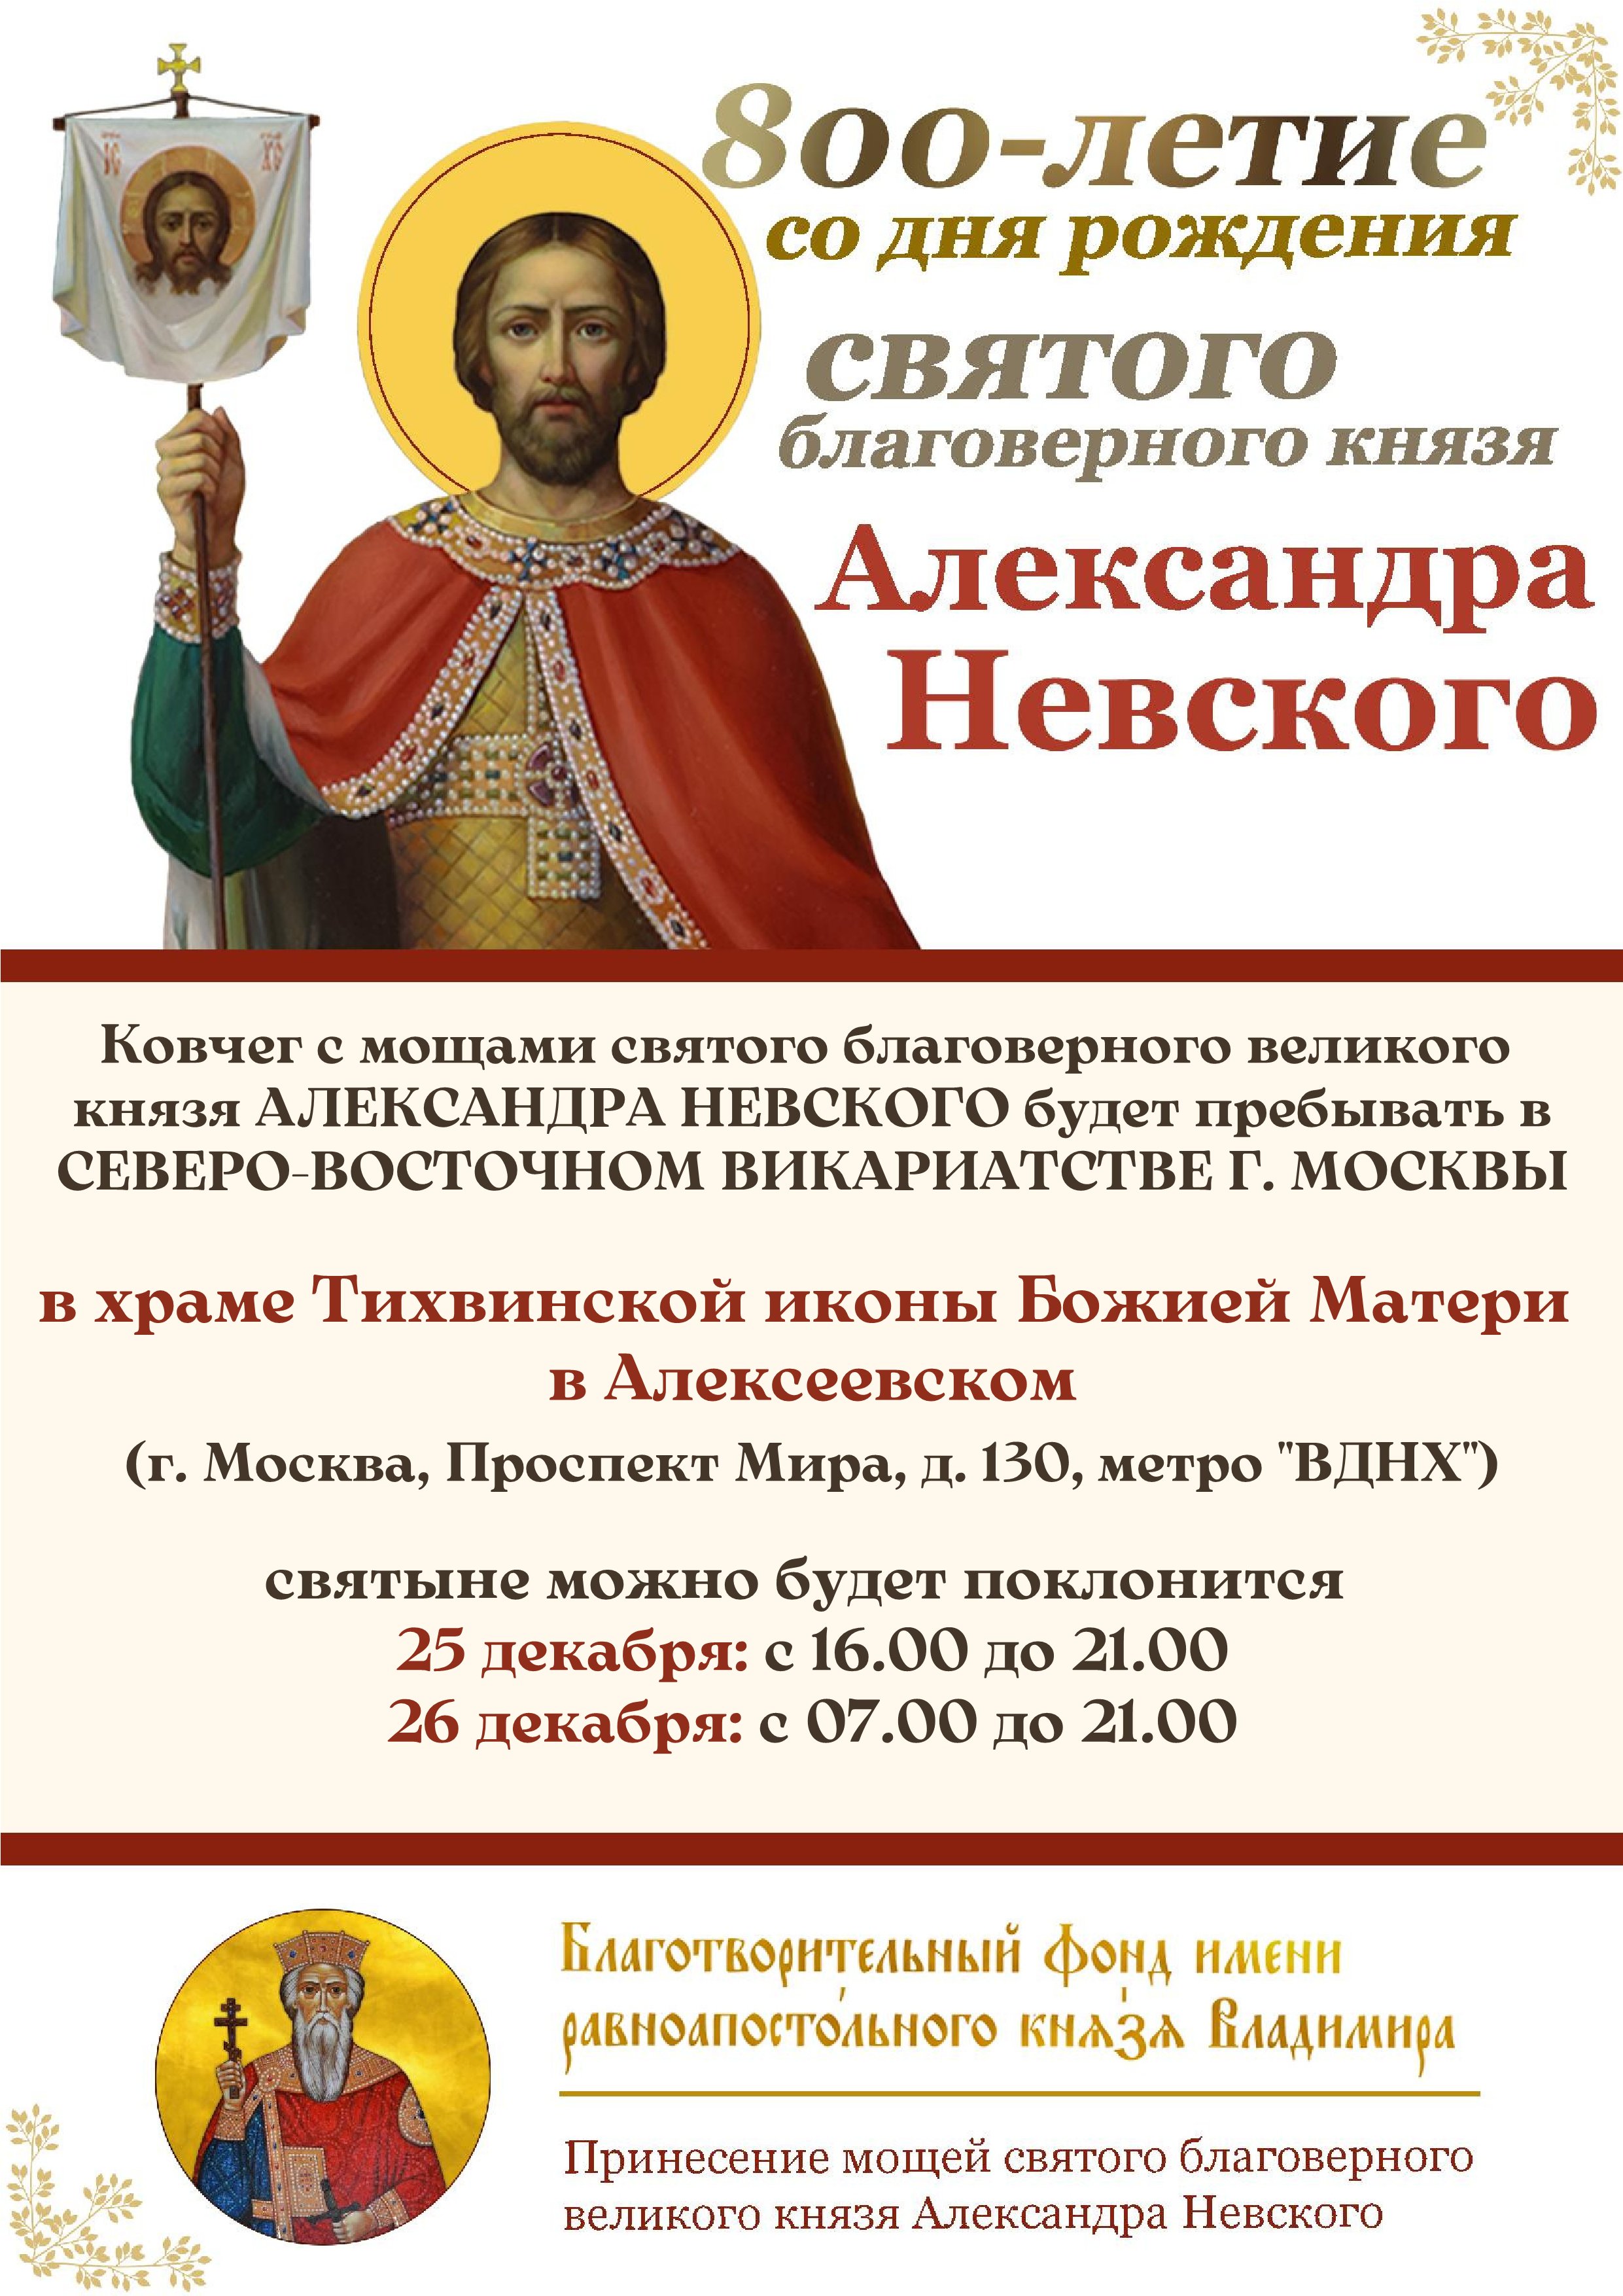 25-26 декабря 2021 года в Северо-Восточном викариатстве г. Москвы состоится принесение ковчега с мощами святого благоверного князя Александра Невского